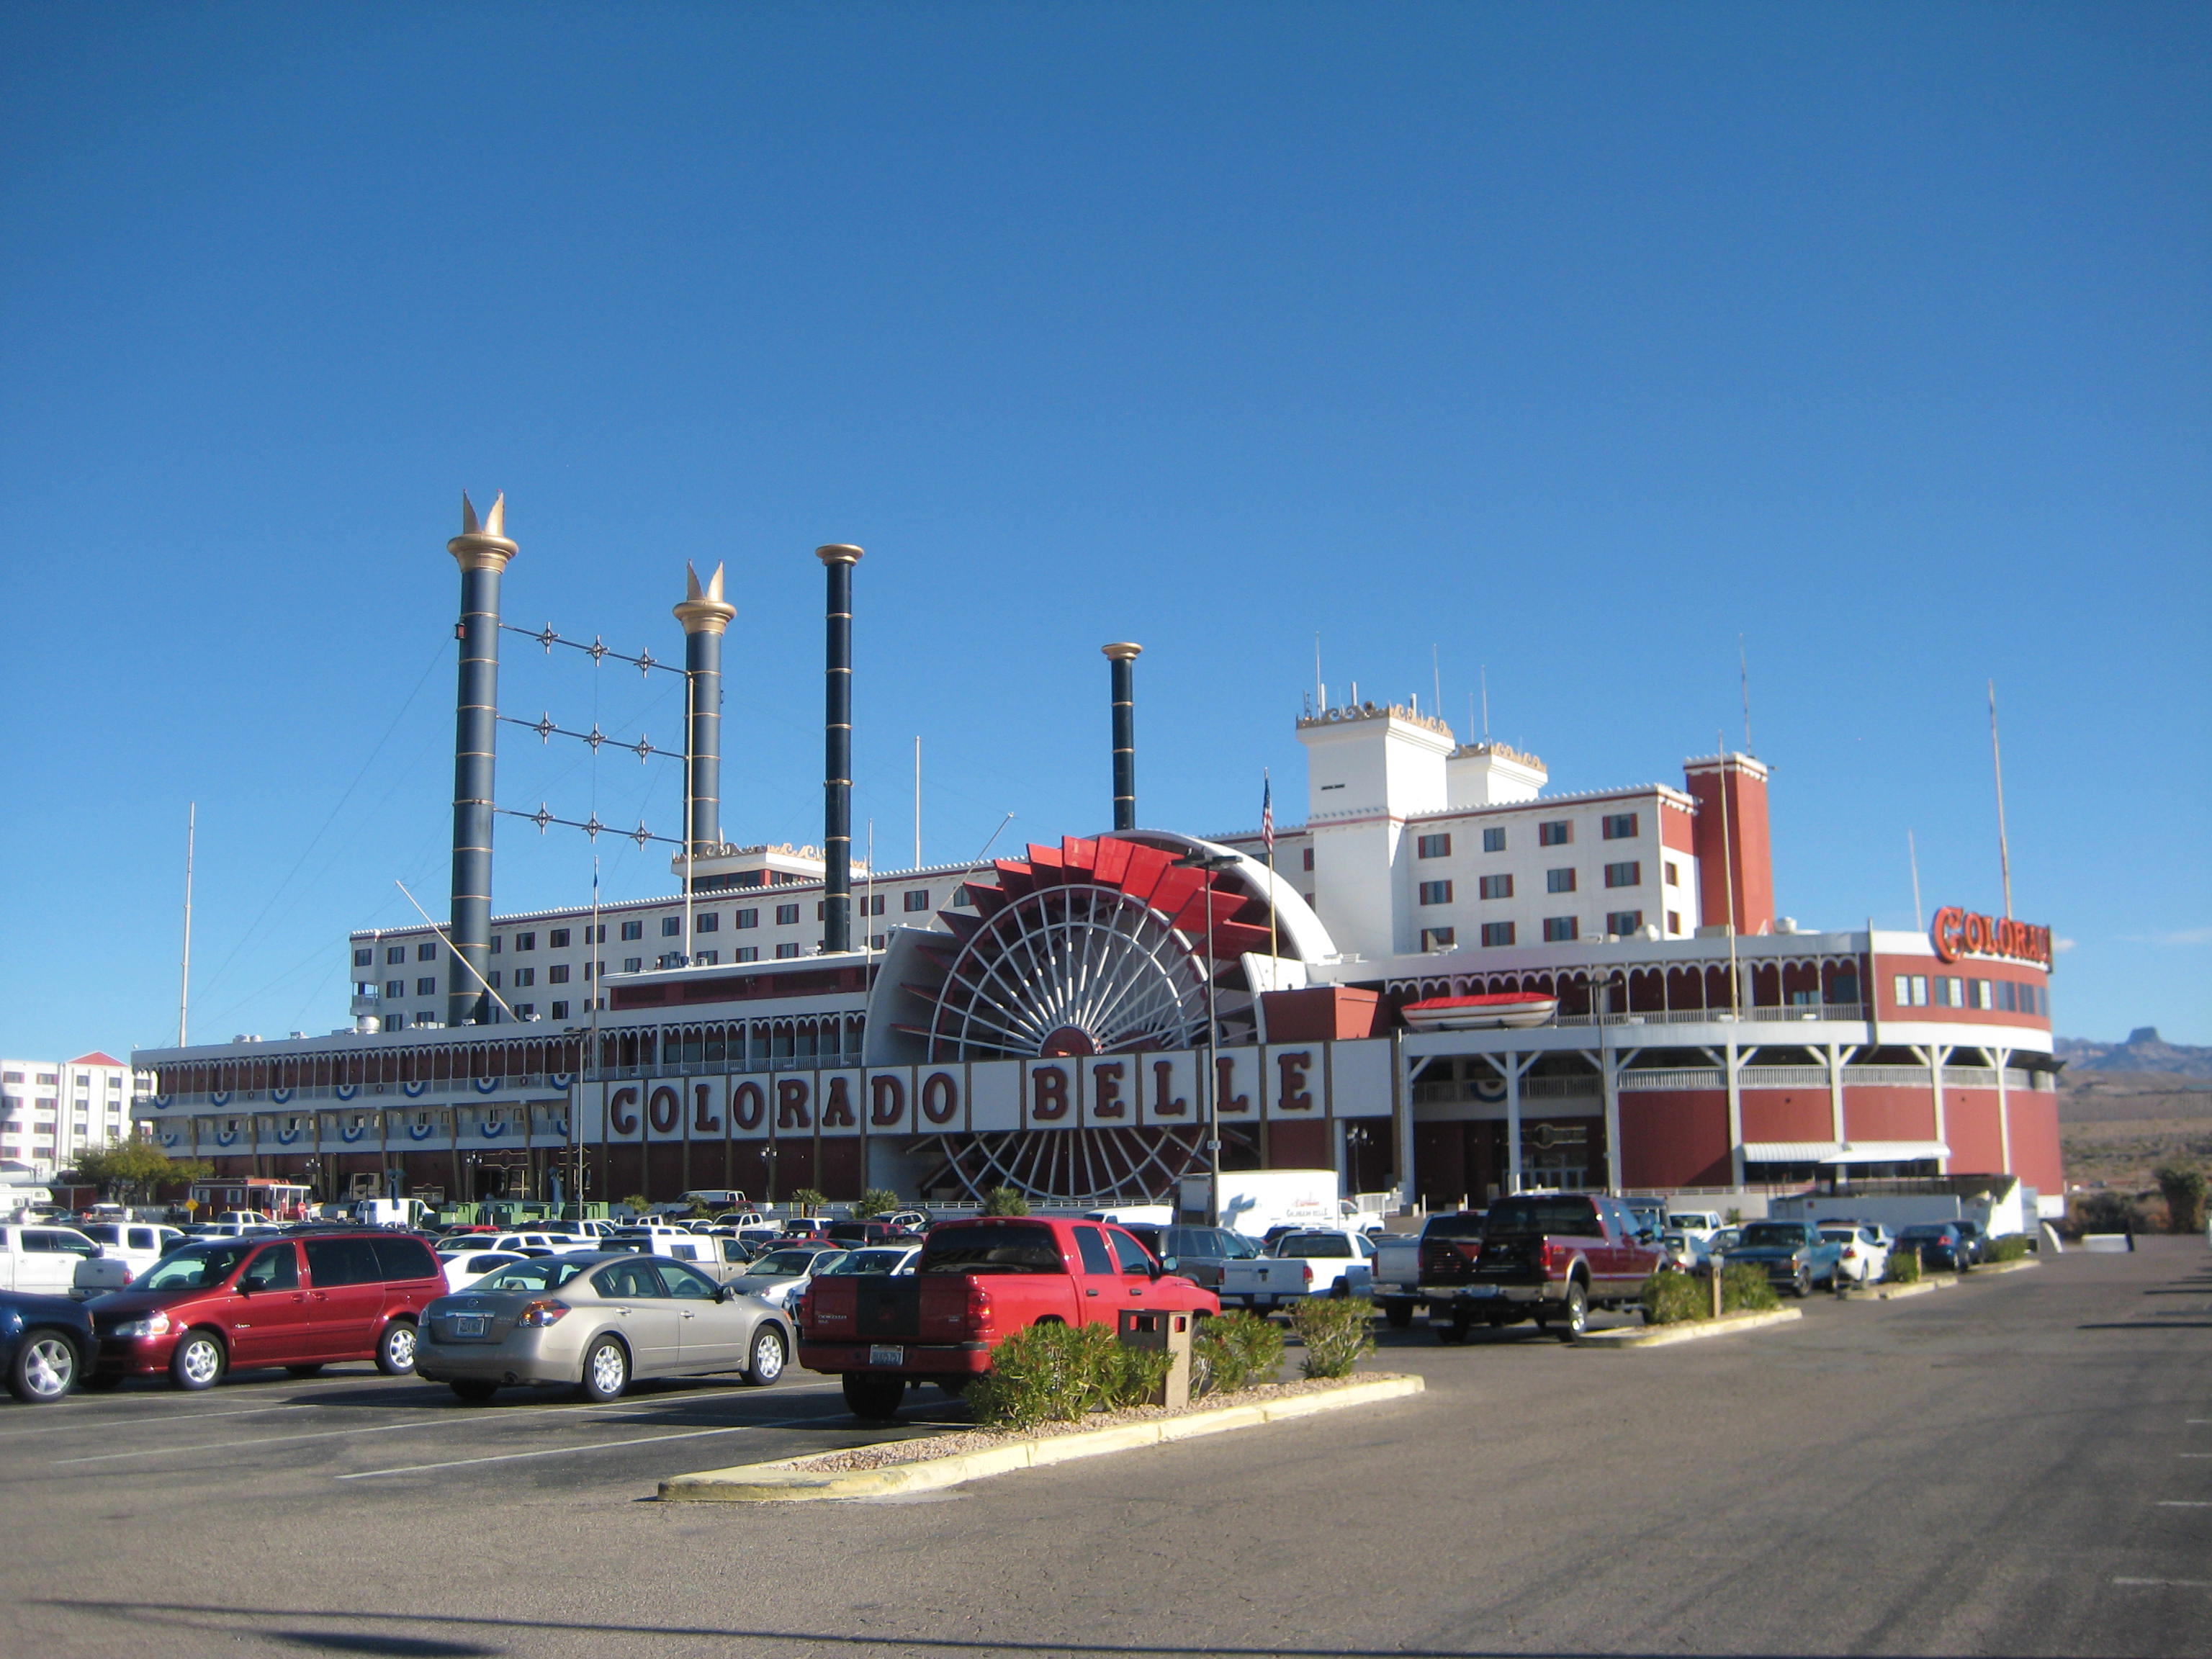 Colorado Belle Hotel Casino